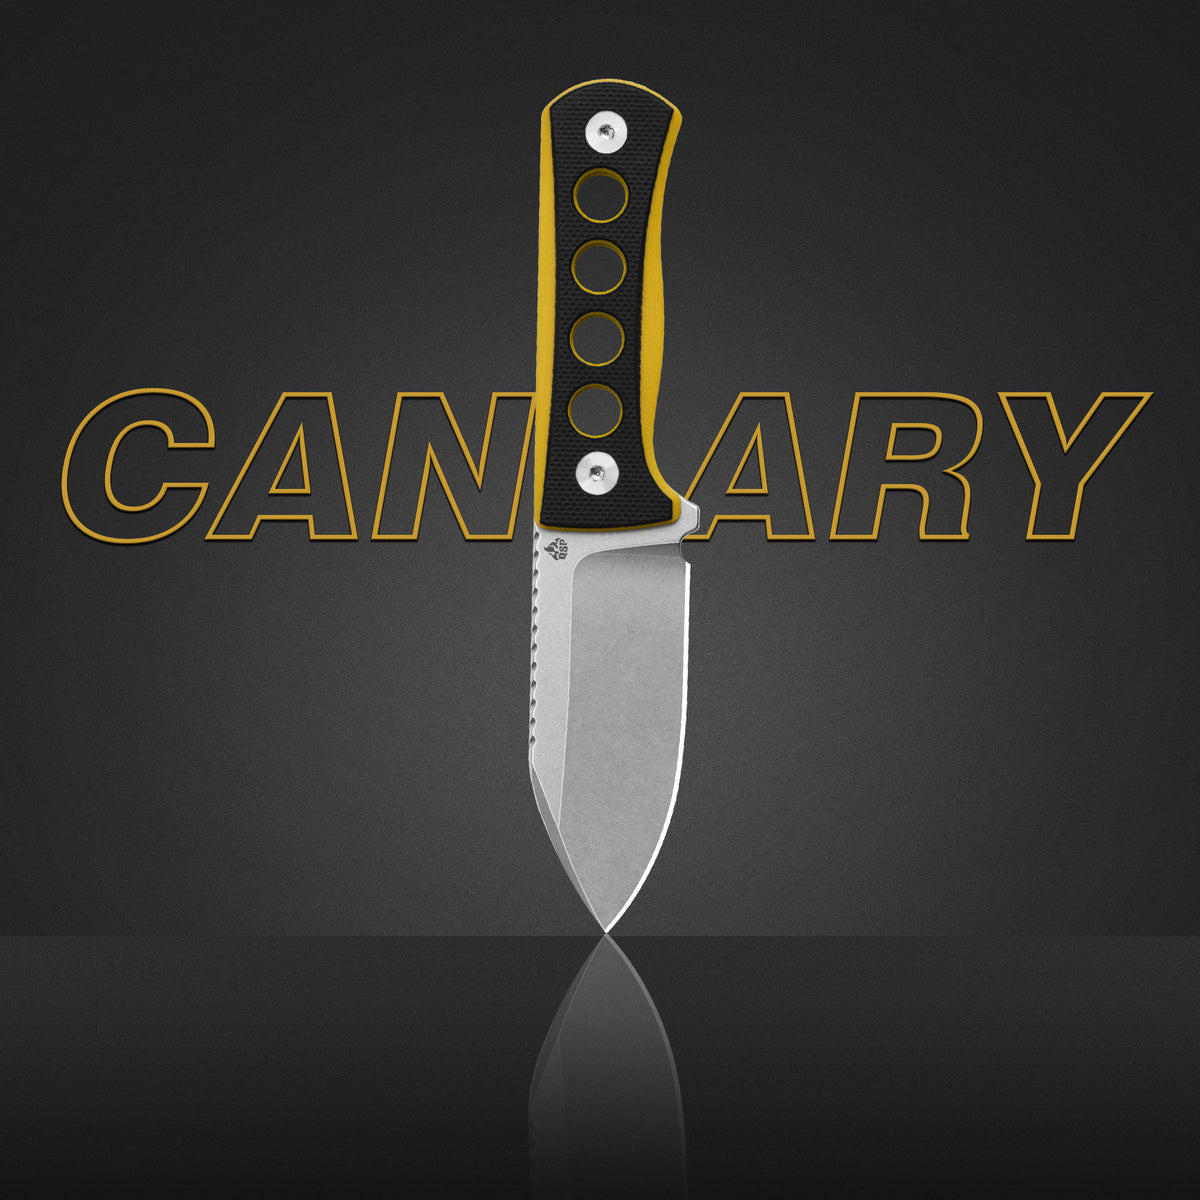 QSP Kitchen Knife 4'' Kritsuke Damascus Blade Desert Iron Wood Handle – QSP  KNIFE